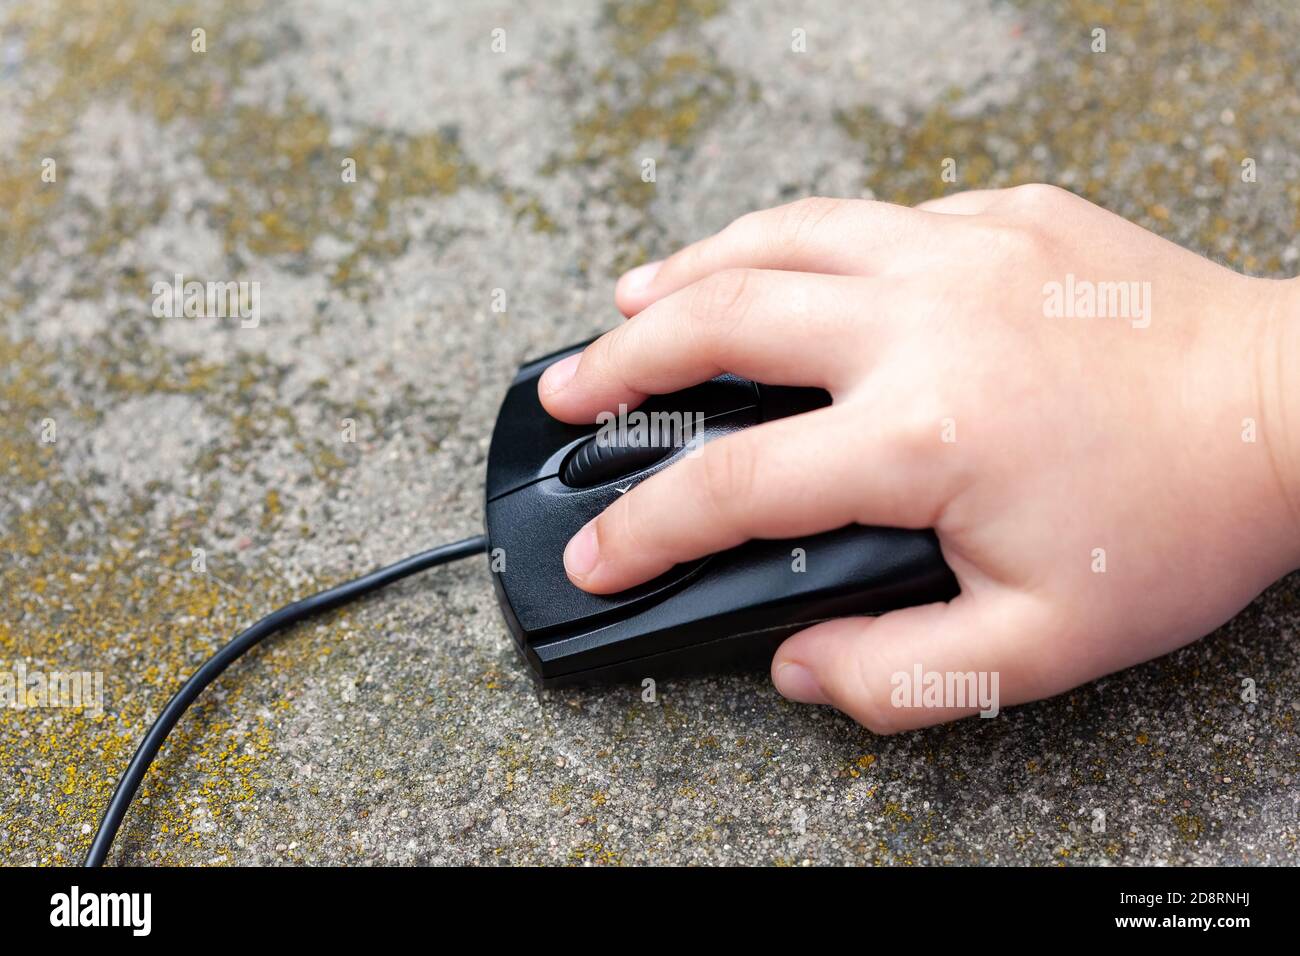 Petit enfant main sur une souris d'ordinateur, gros plan. Enfant en appuyant sur un bouton maintenant une souris PC noire de près, vue du dessus. Jeunes enfants sur Internet Banque D'Images